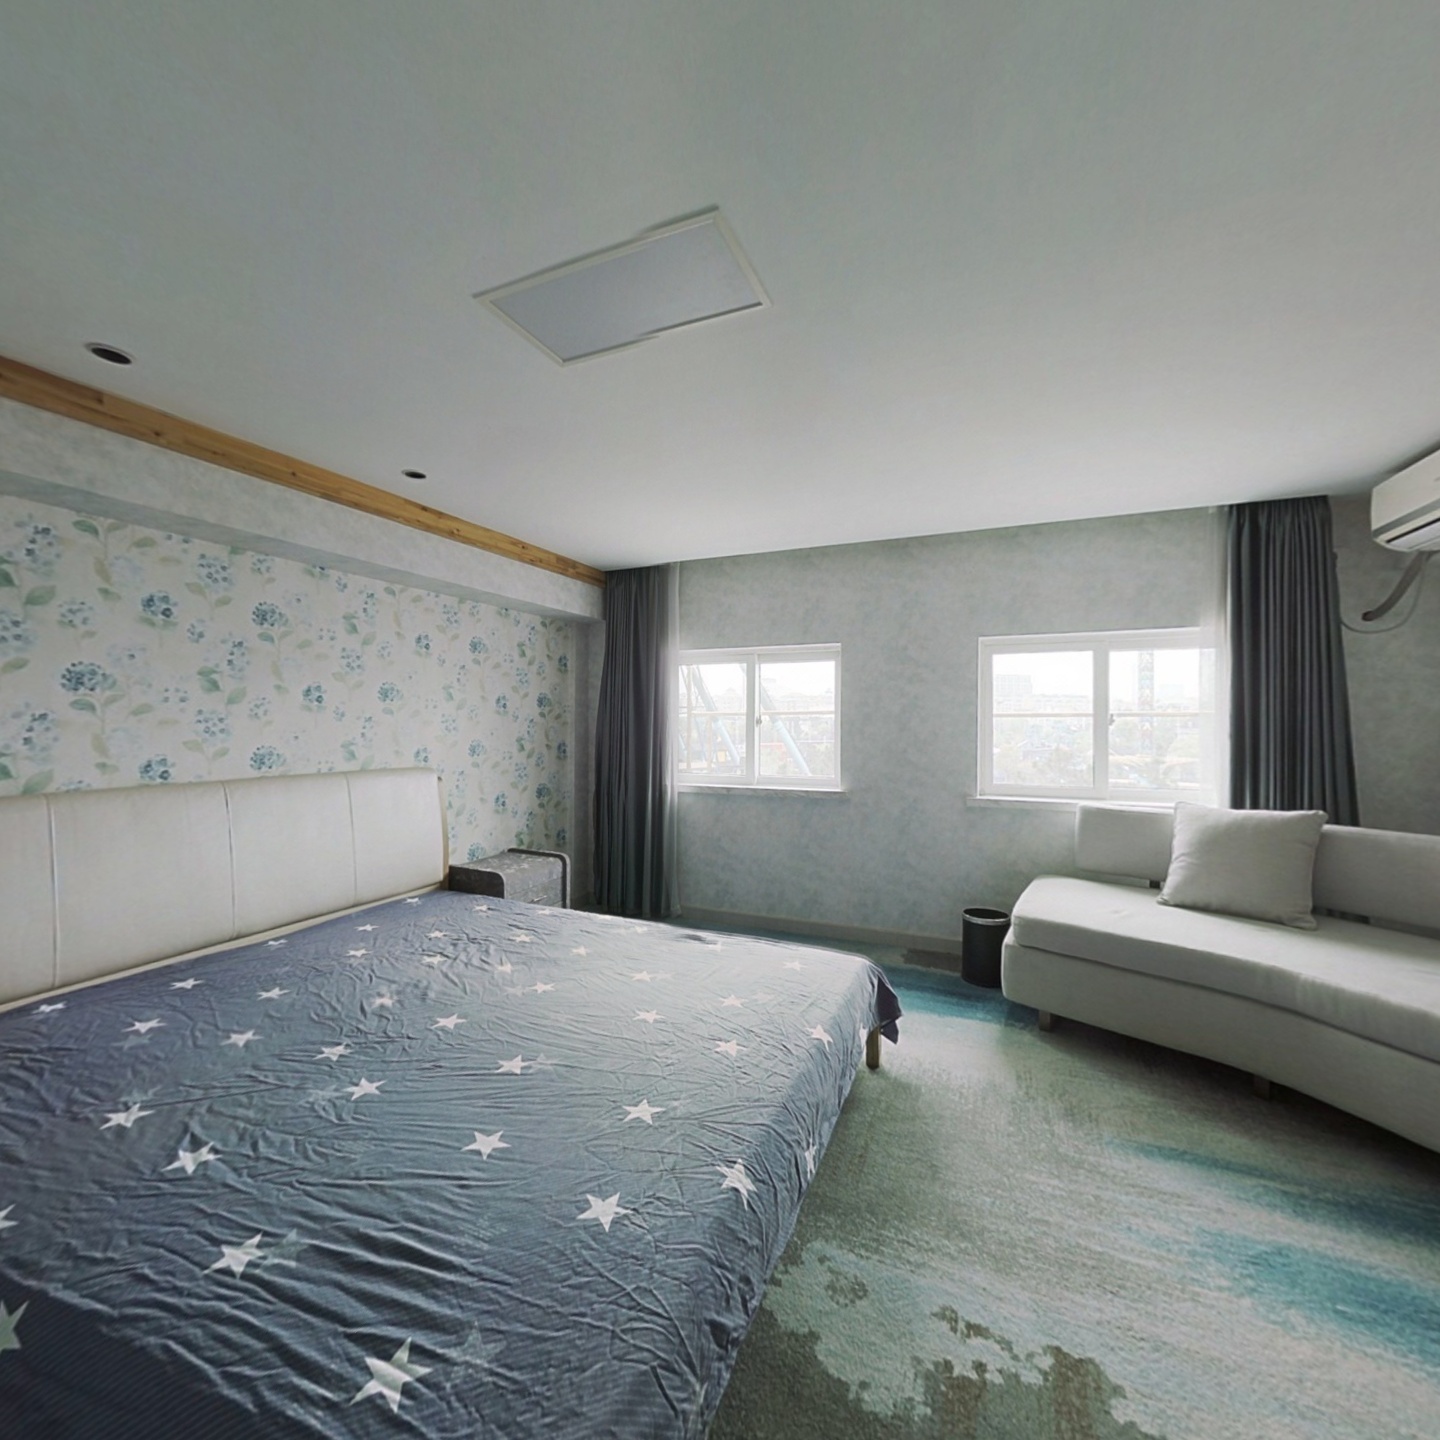 70年产权 有3个卧室1个阳光房 杭州乐园美景尽收眼底